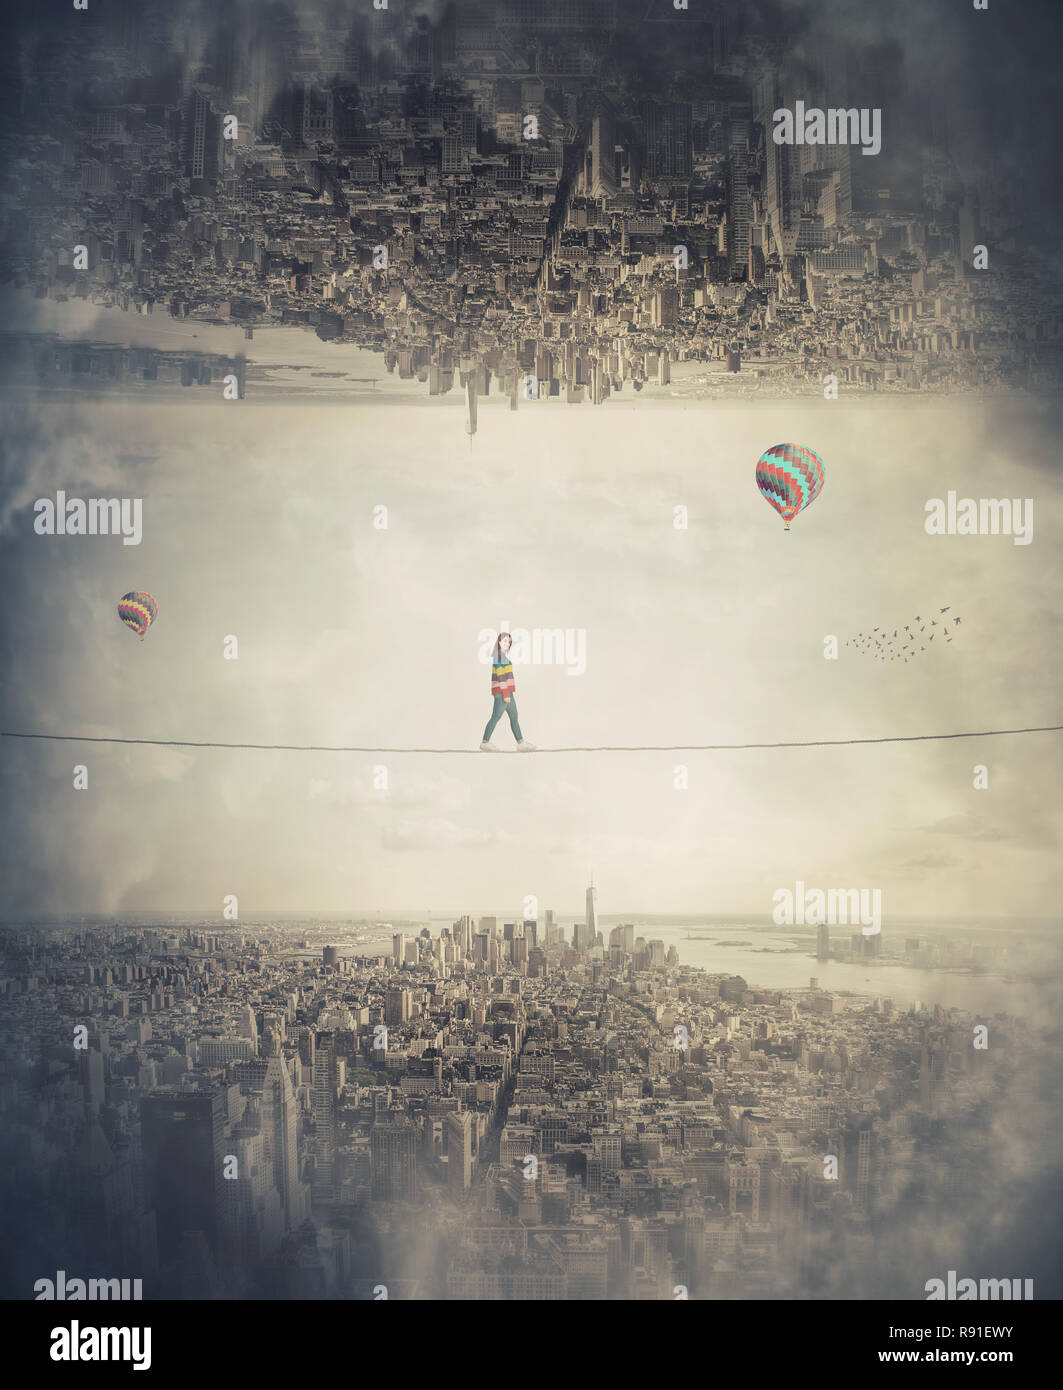 Jeune femme silhouette en équilibre sur corde slackline haut au-dessus de nuages entre deux mondes parallèles imaginaire. Marcher confiant sur corde raide. La conquête Banque D'Images